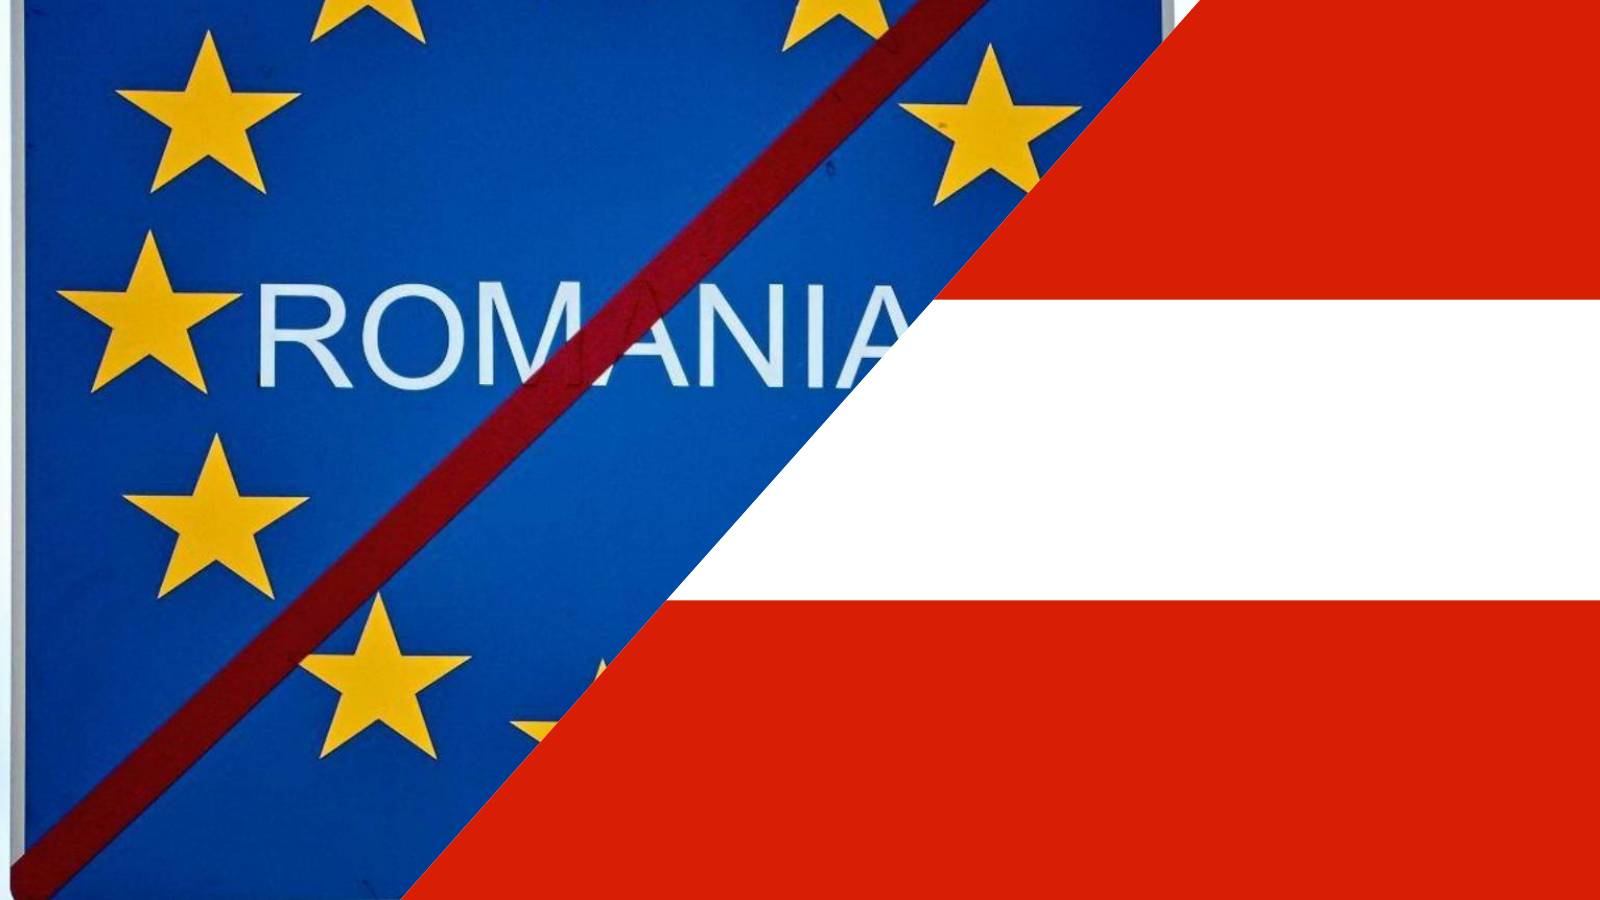 L'Autriche partage la raison annoncée par le vice-chancelier pour bloquer l'adhésion de la Roumanie à l'espace Schengen